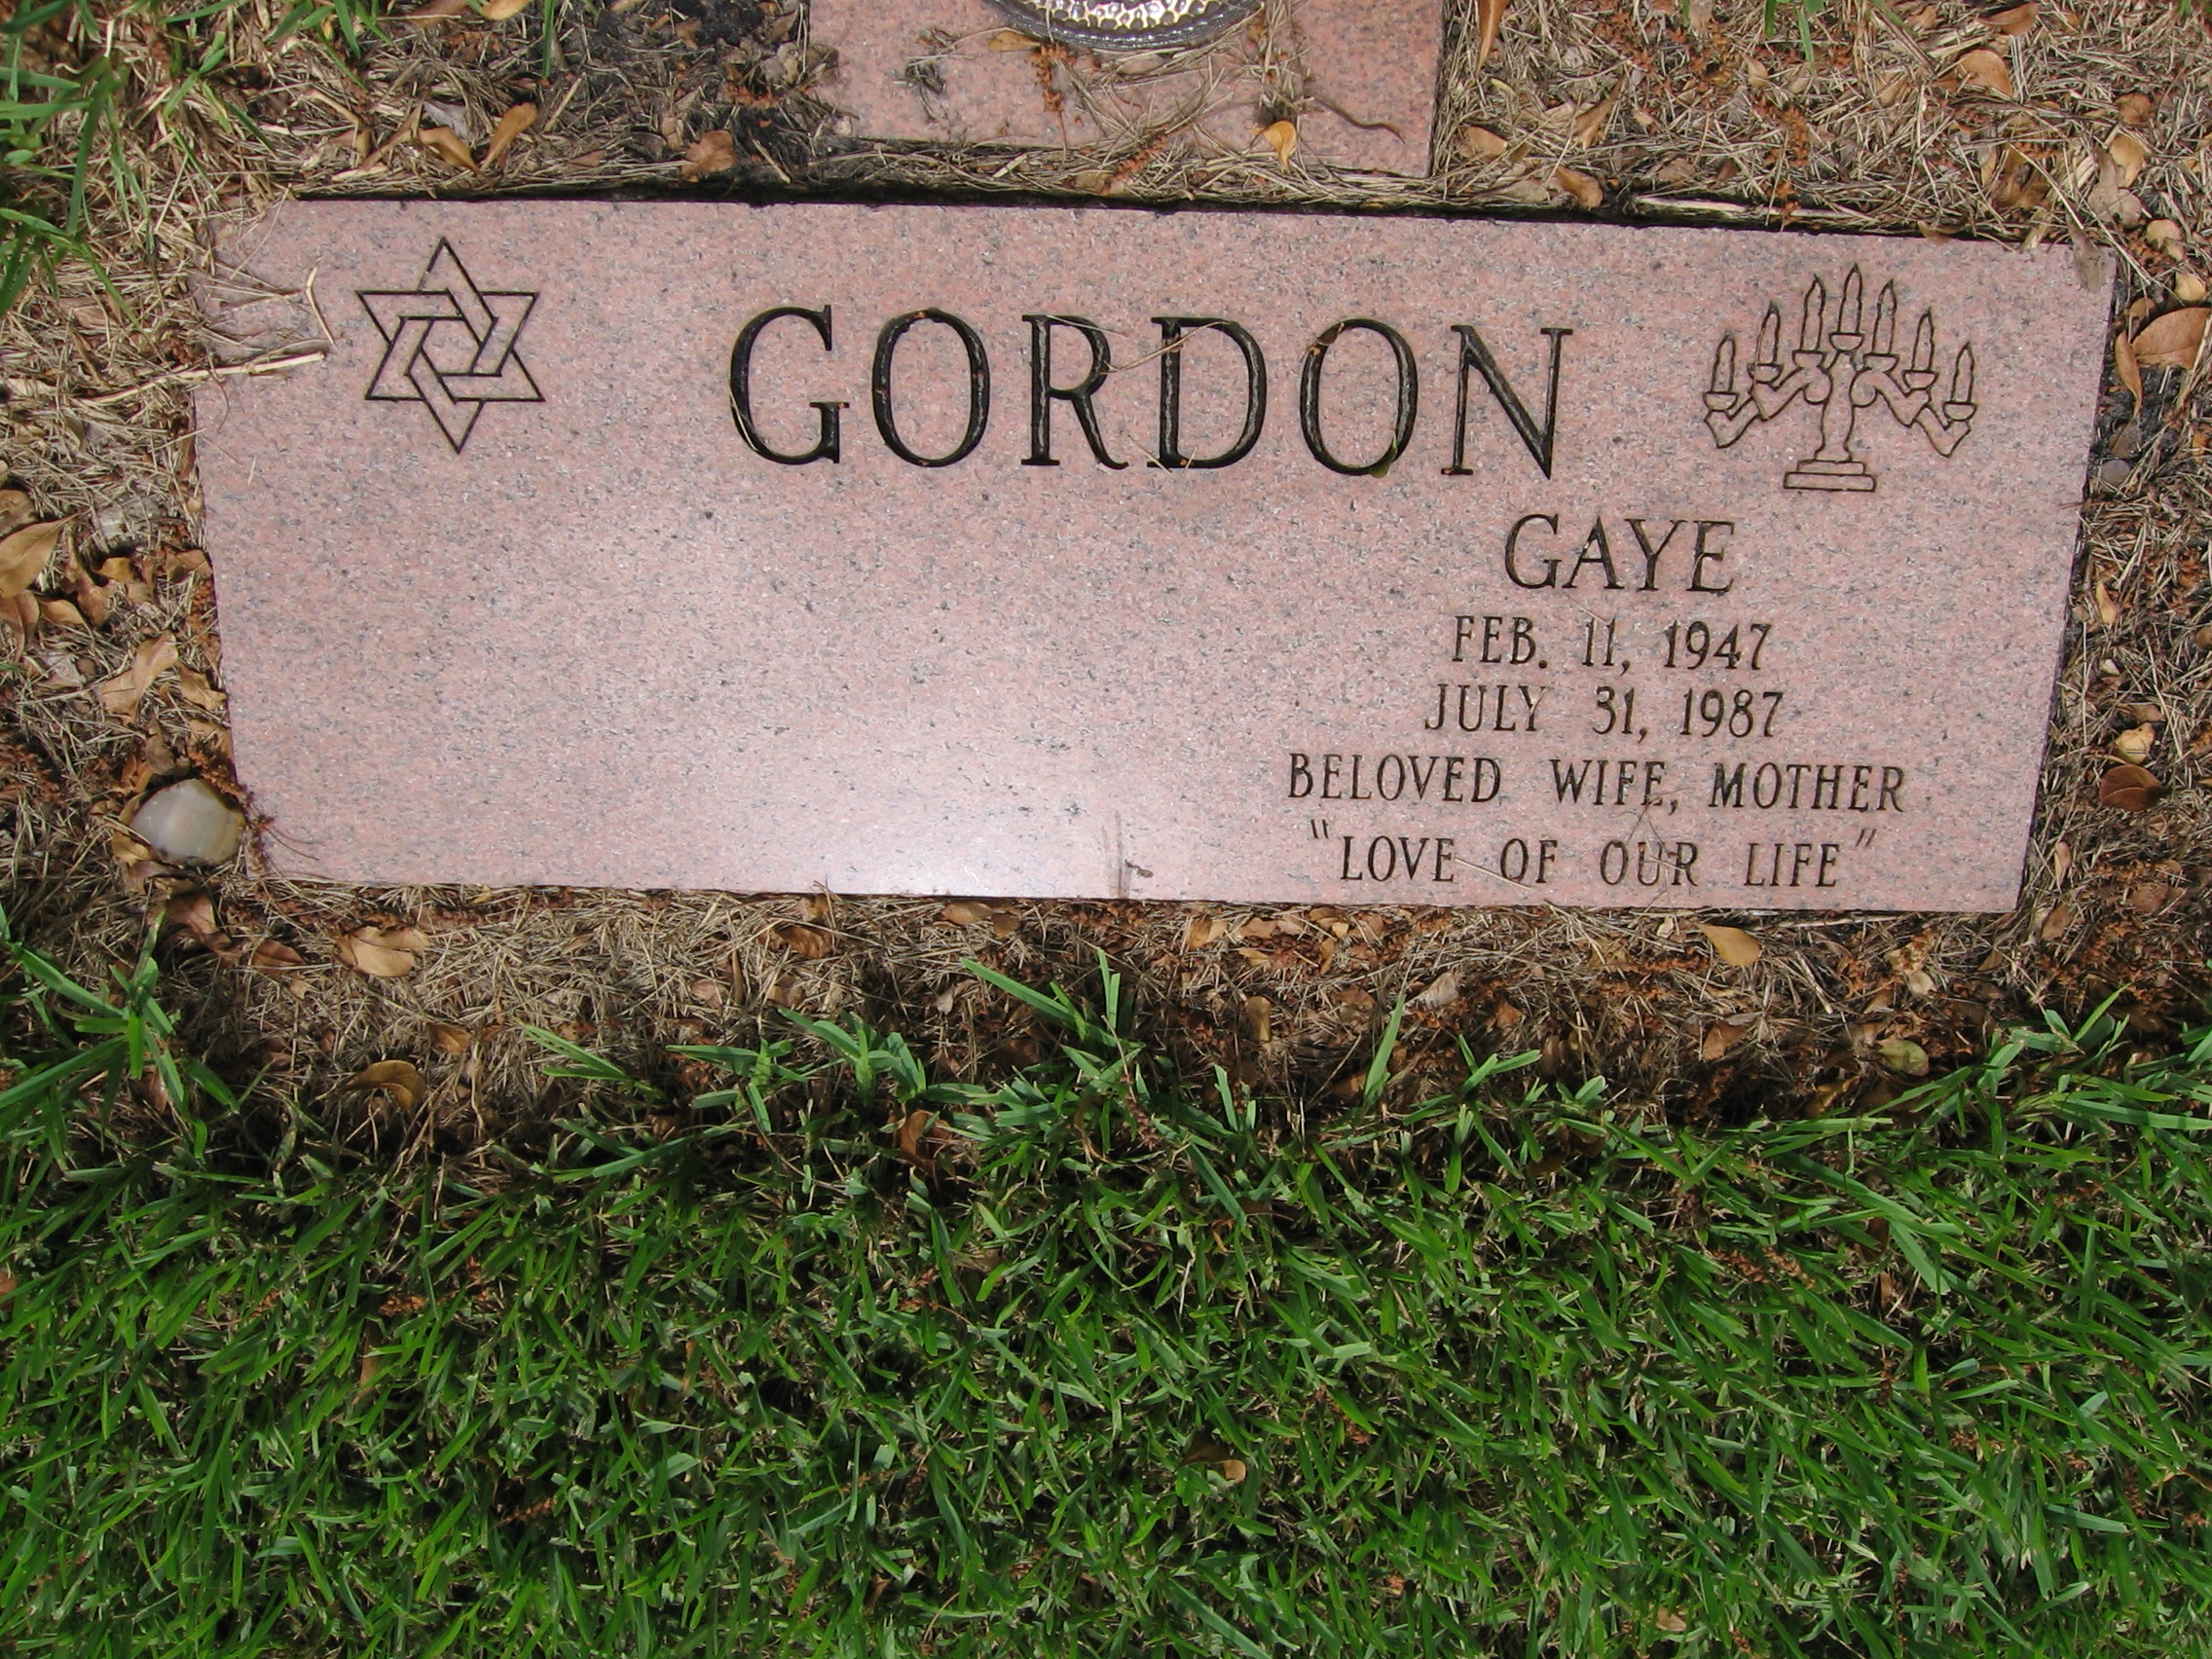 Gaye Gordon